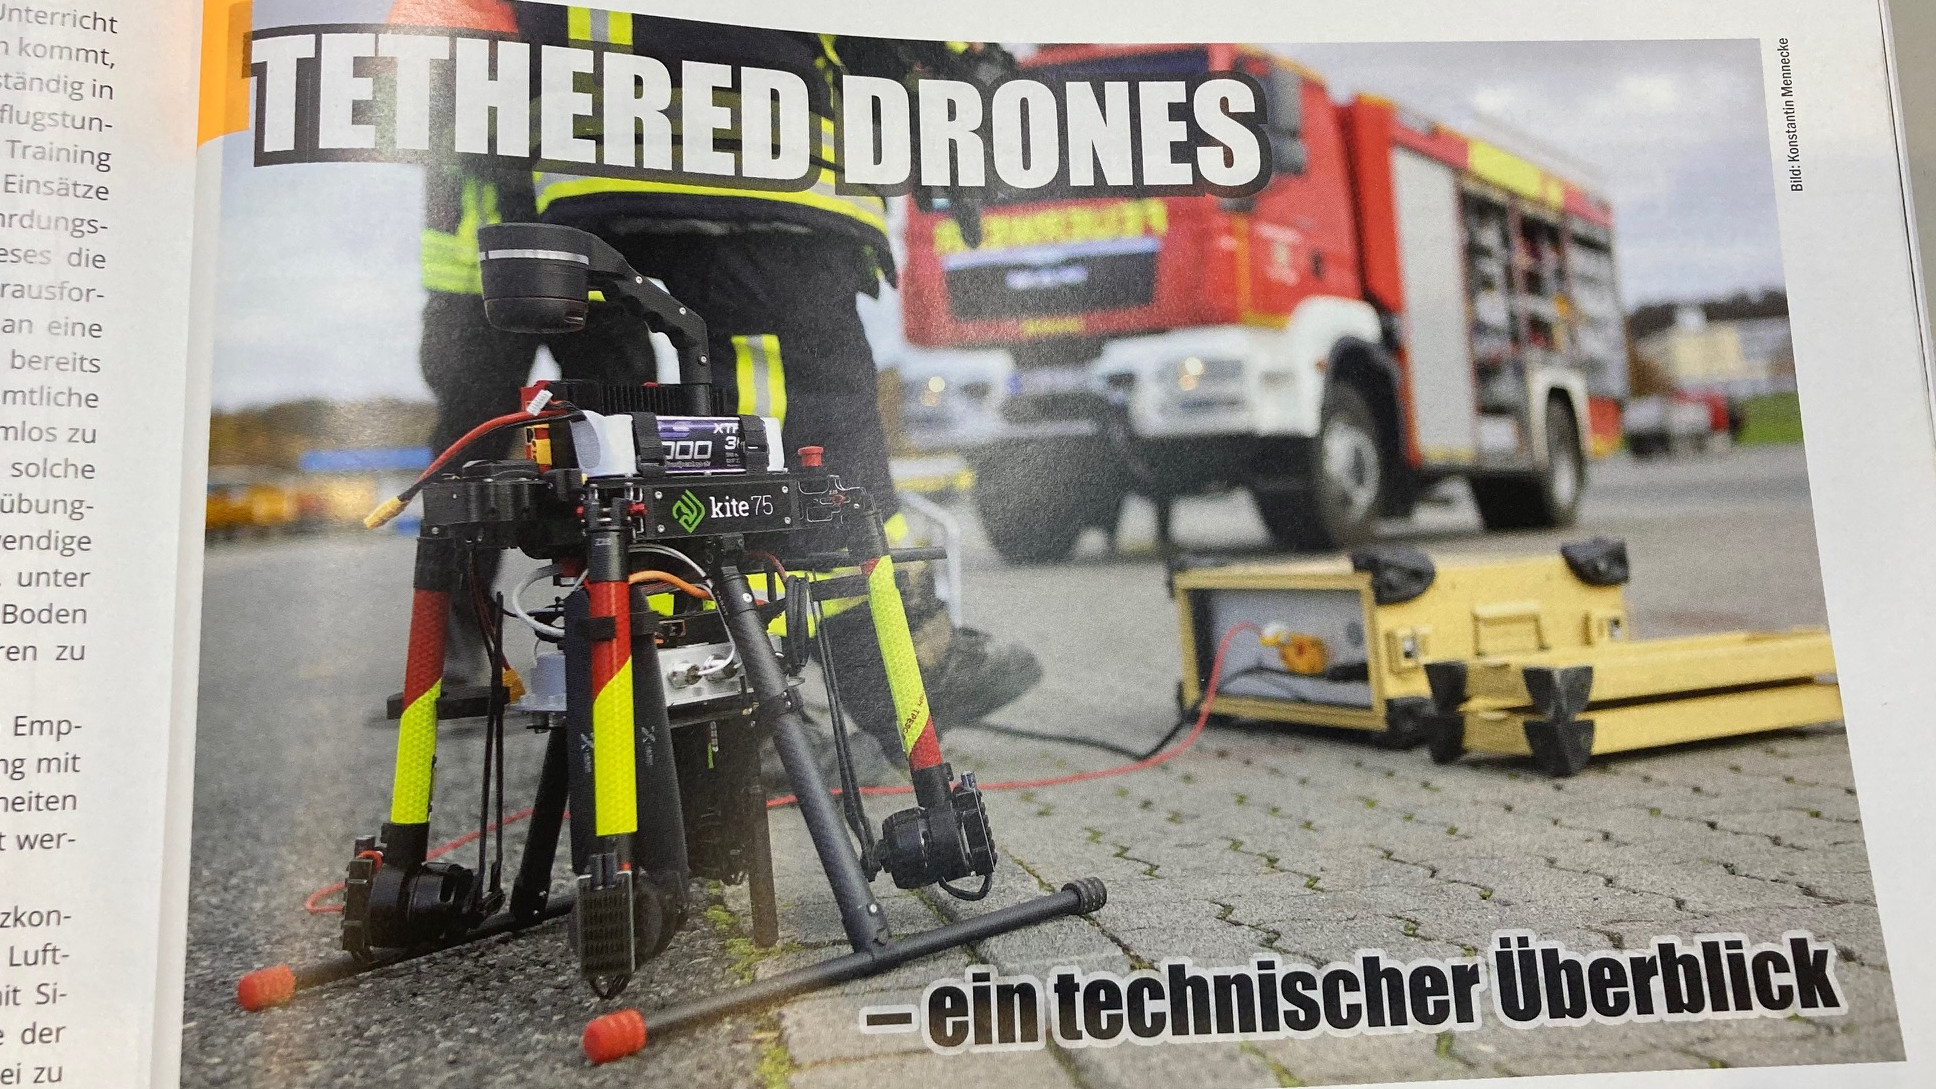 Titelbild "TETHERED DRONES - ein technischer Überblick"